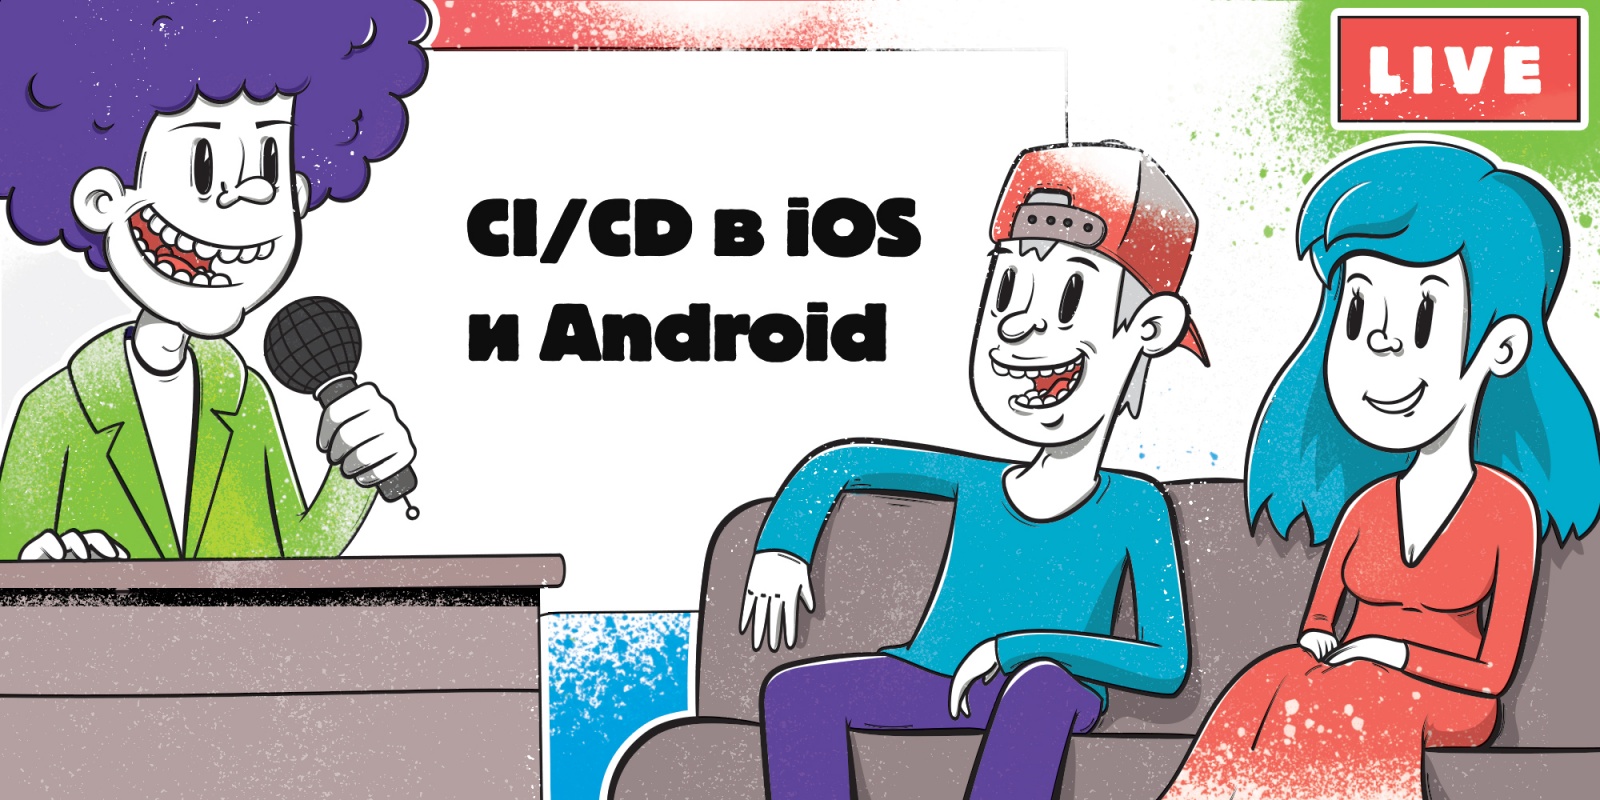 Прямой эфир: СI-CD в iOS и Android - 1